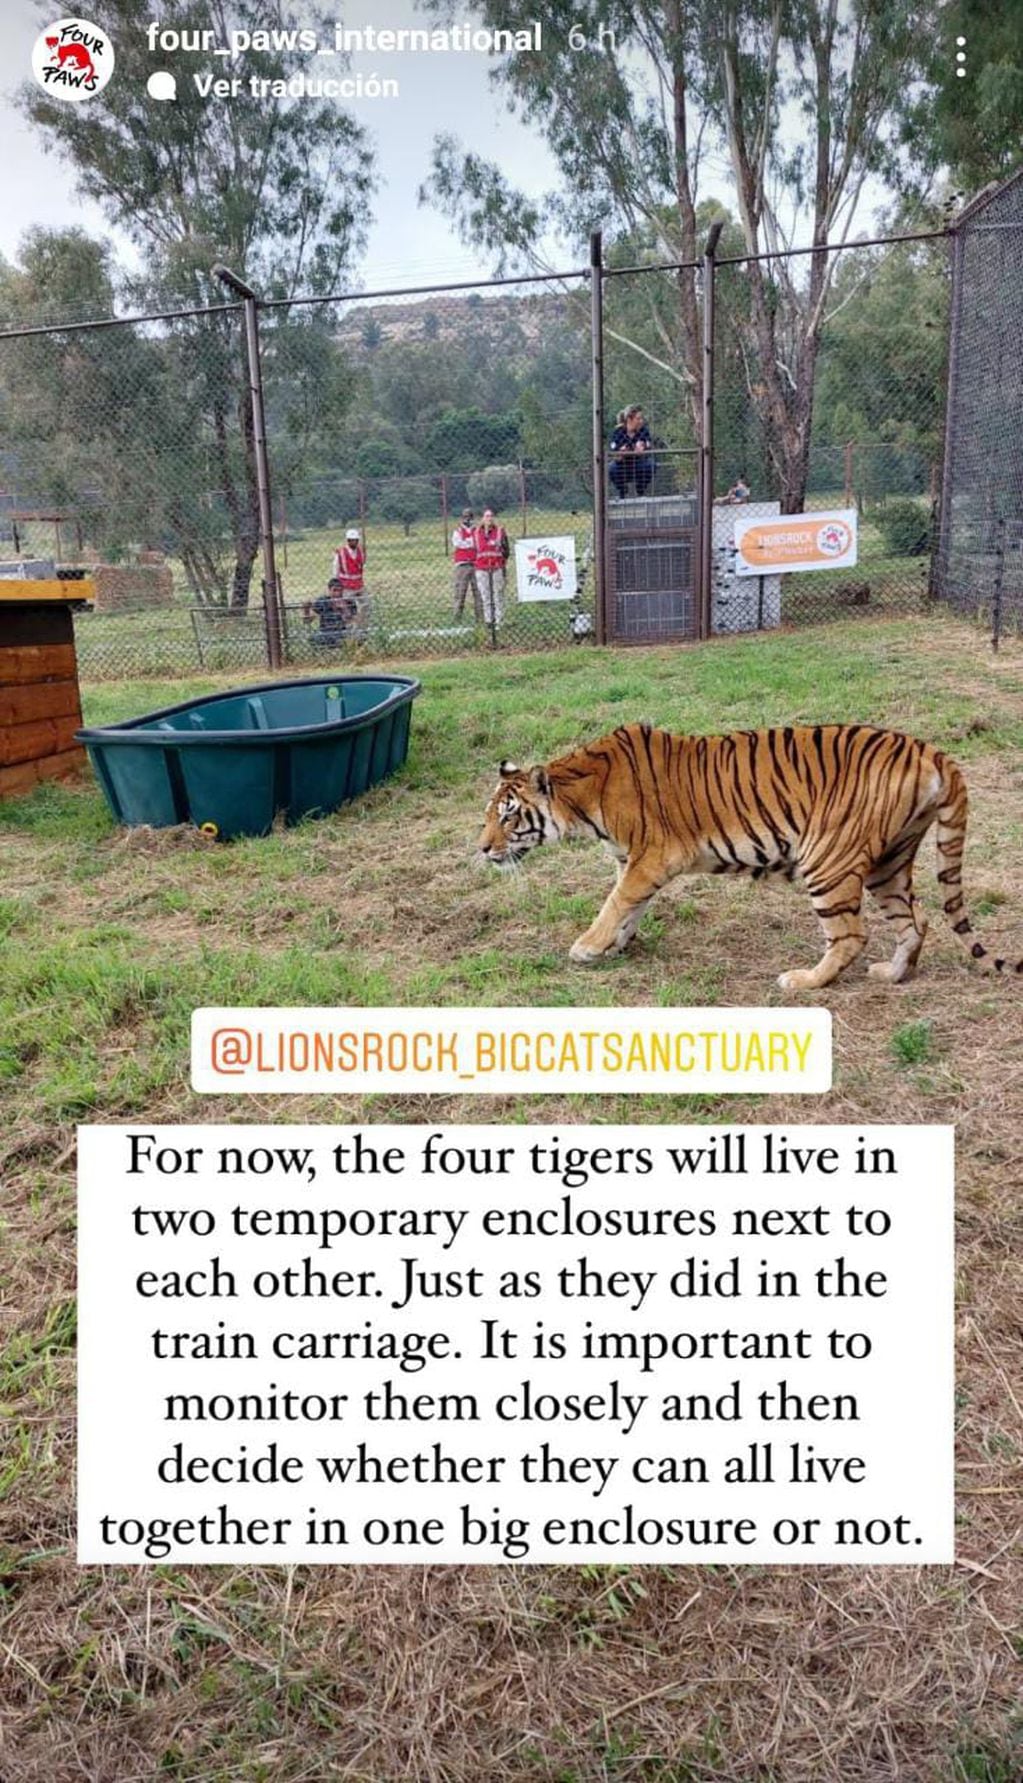 Traducción: "Por ahora, los cuatro tigres estarán en dos ambientes cerrados temporales, uno al lado del otro, tal como estaban dispuestos en los vagones del tren. Es importante monitorearlos y observar para saber si pueden vivir en un solo ambiente cerrado todos ellos".